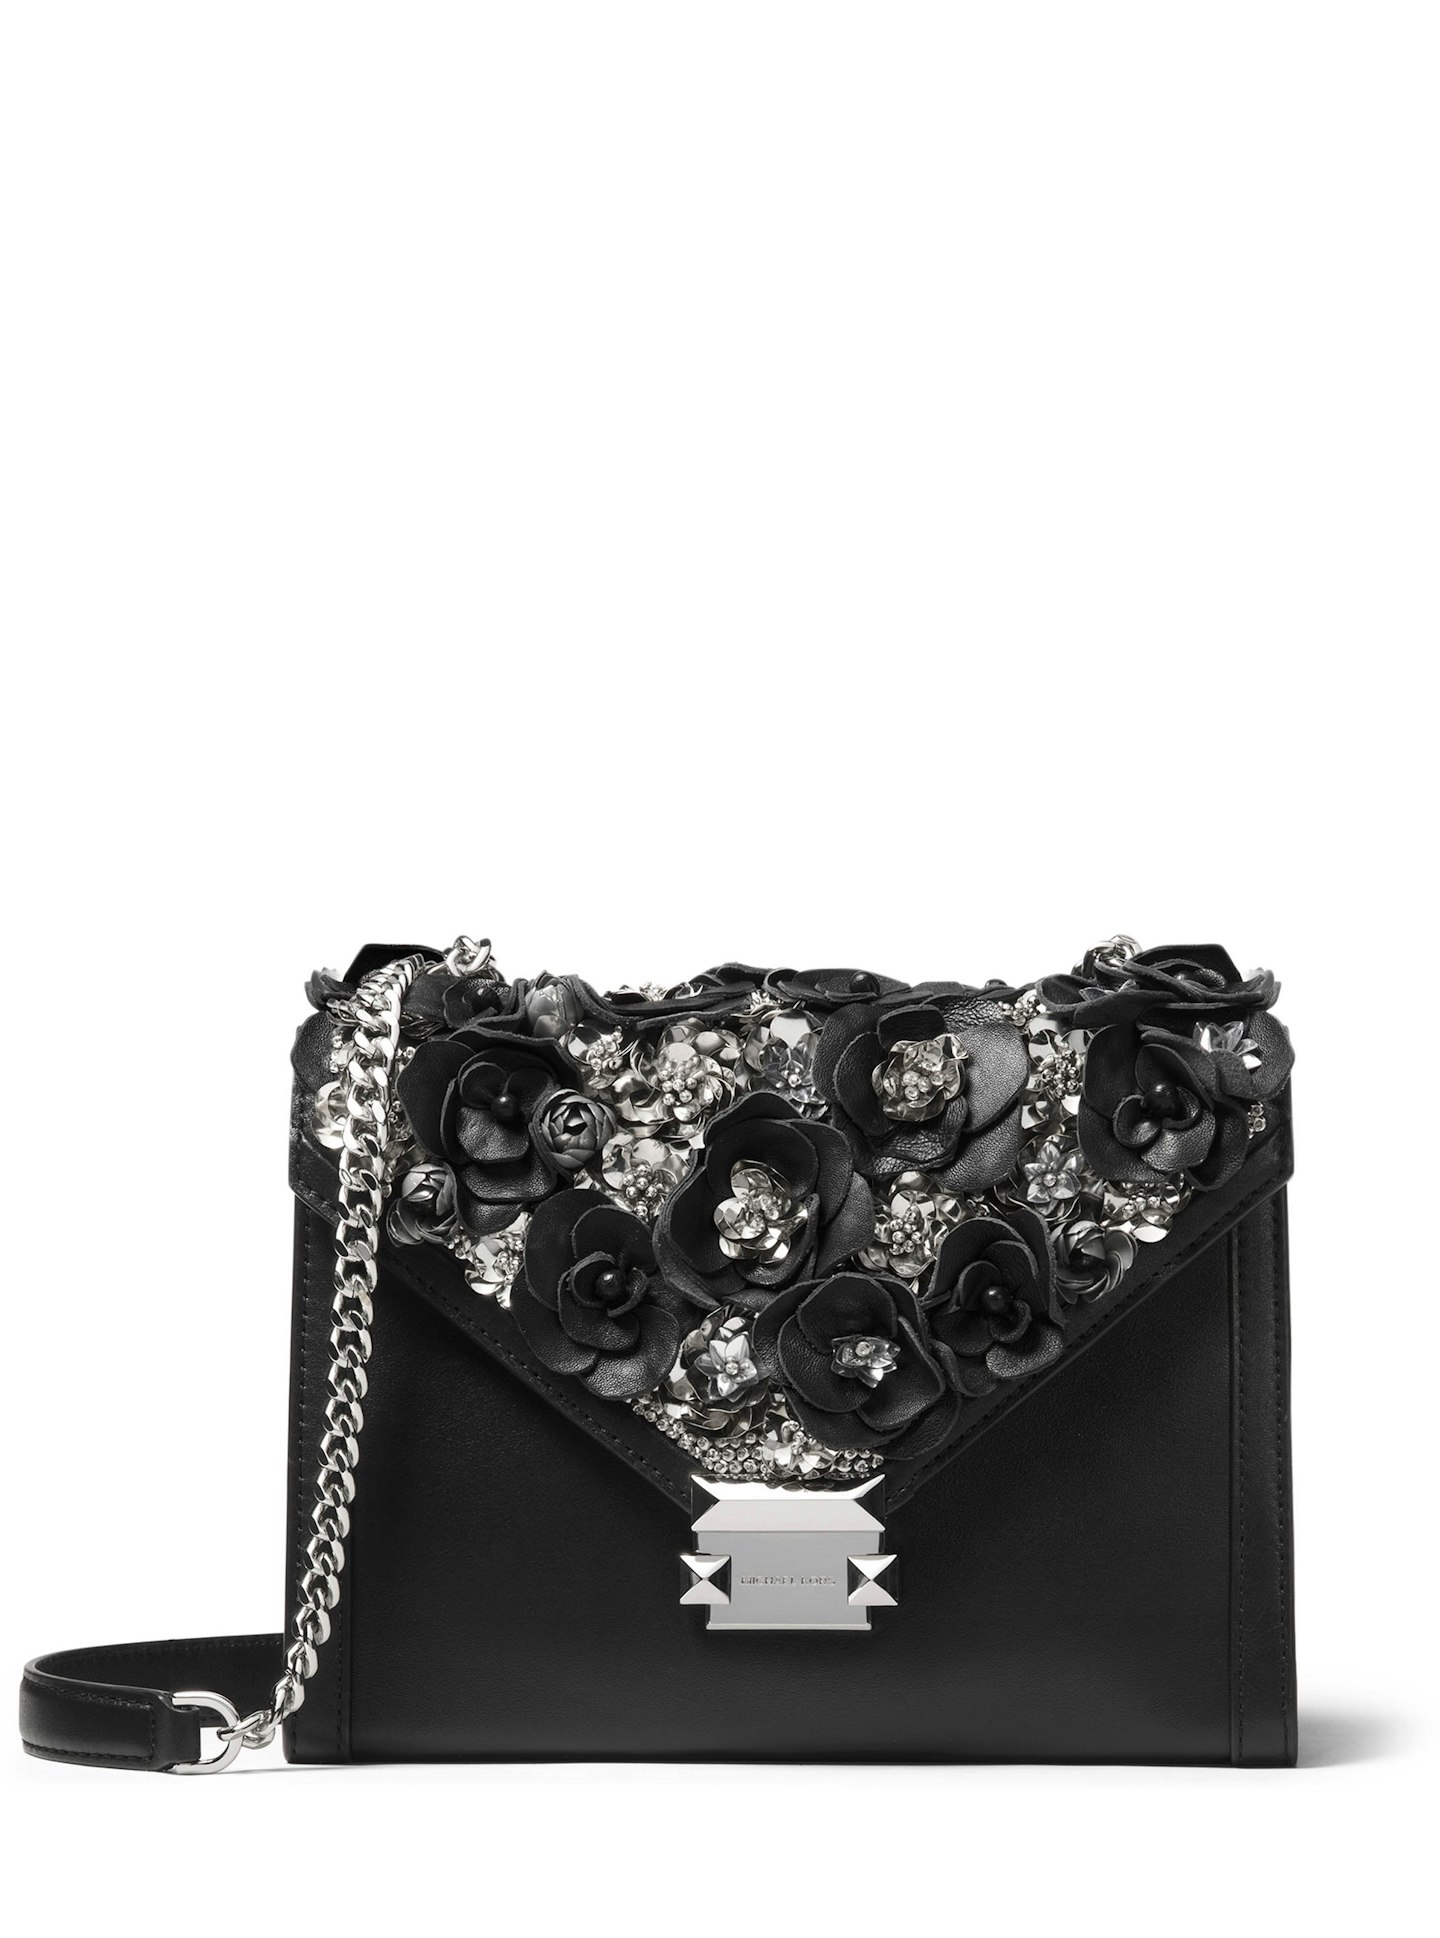 Michael Kors - Black Floral Embellished Leather Whitney Shoulder Bag